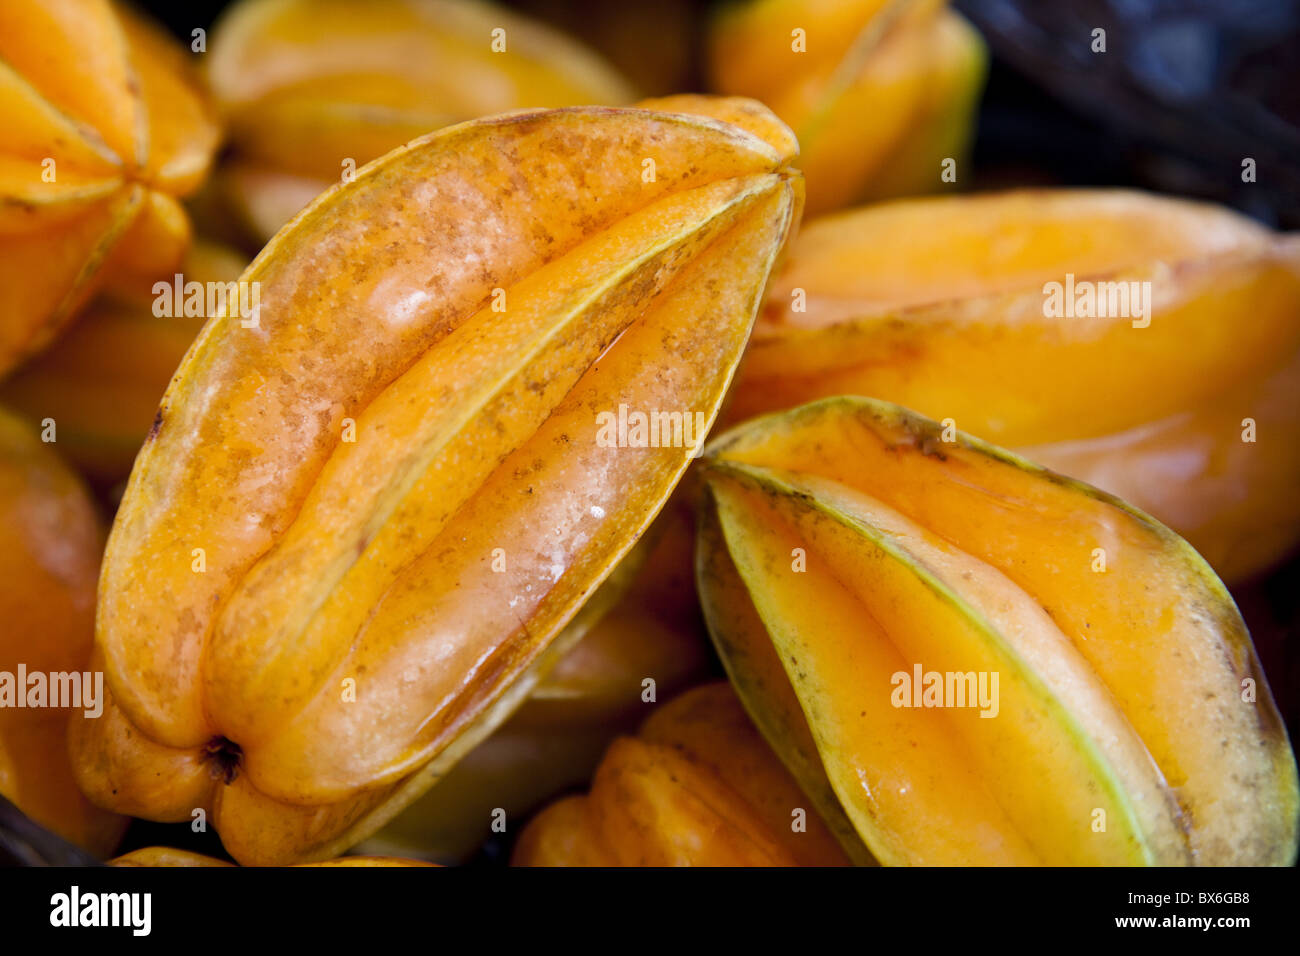 Caramboles (Carambole) (Averrhoa carambola), un fruit en forme d'étoile lorsqu'il est coupé, cultivés en conditions tropicales Banque D'Images